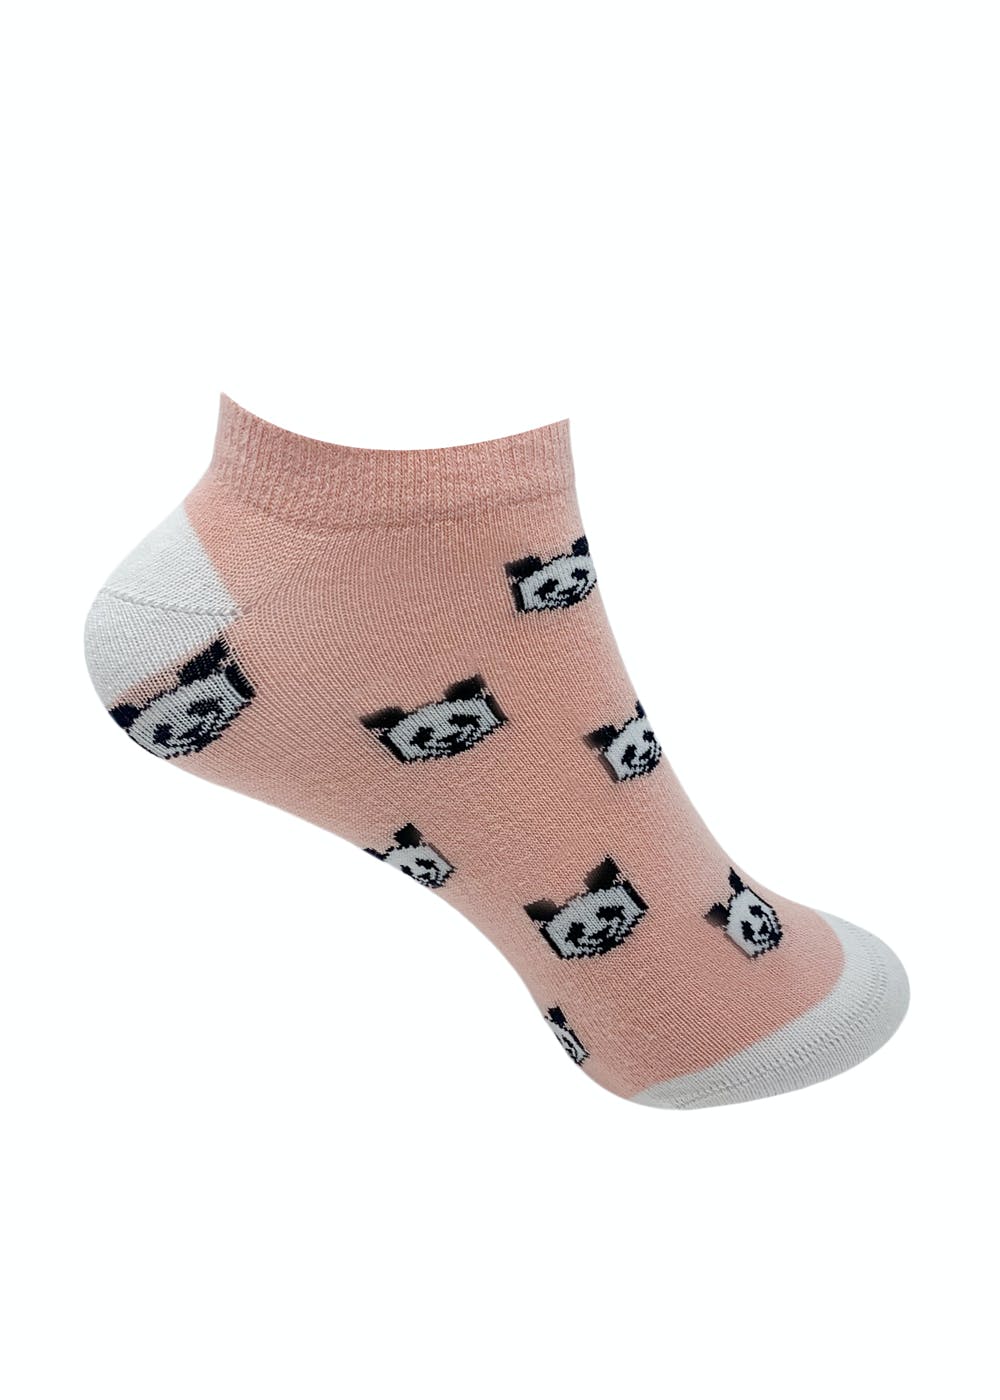 Panda Graphic Pink Low Cut Socks